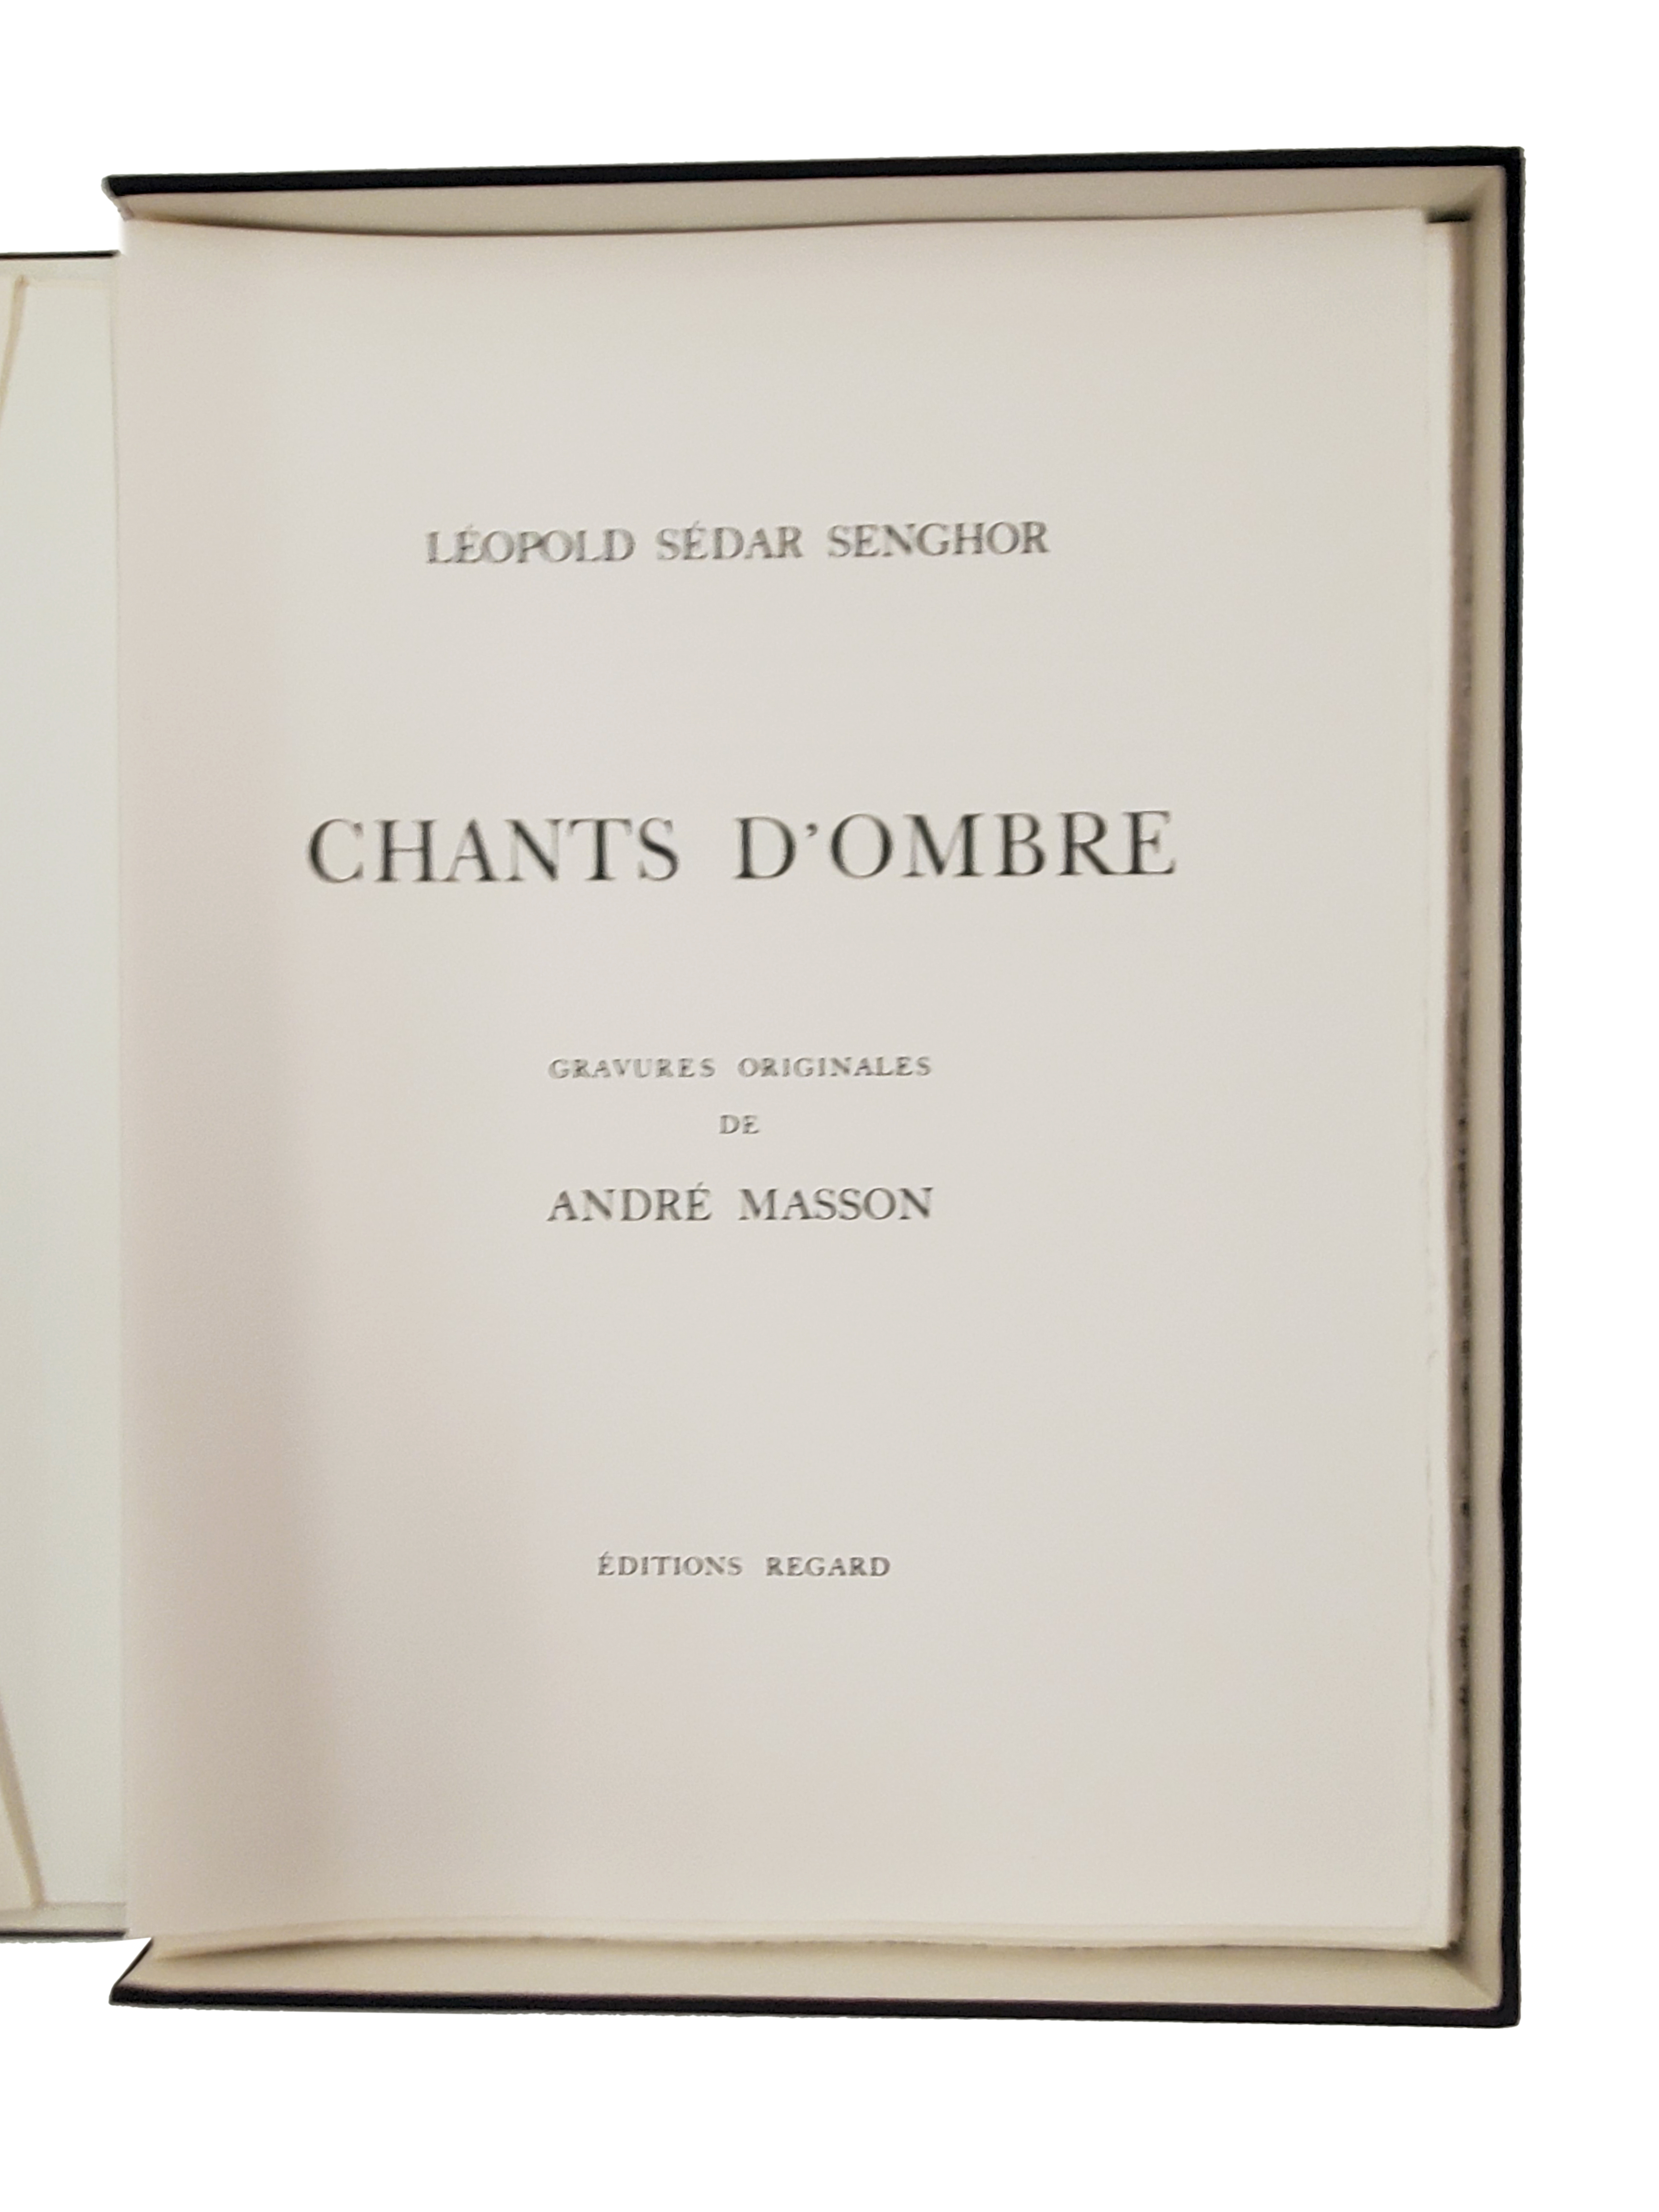 &quot;Chants d'ombre&quot;, poèmes de Léopold Sédar Senghor illustrés par André Masson